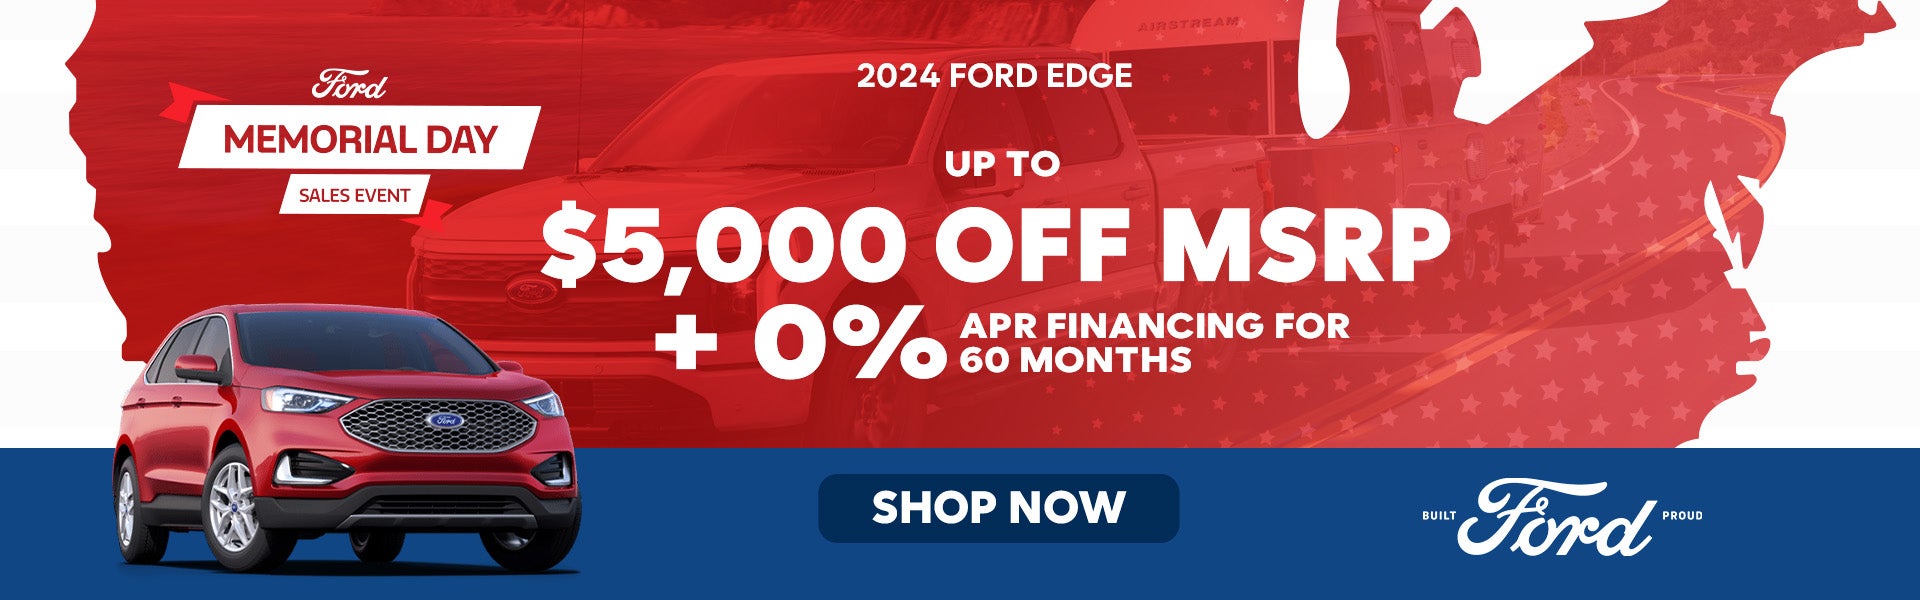 2024 Ford Edge